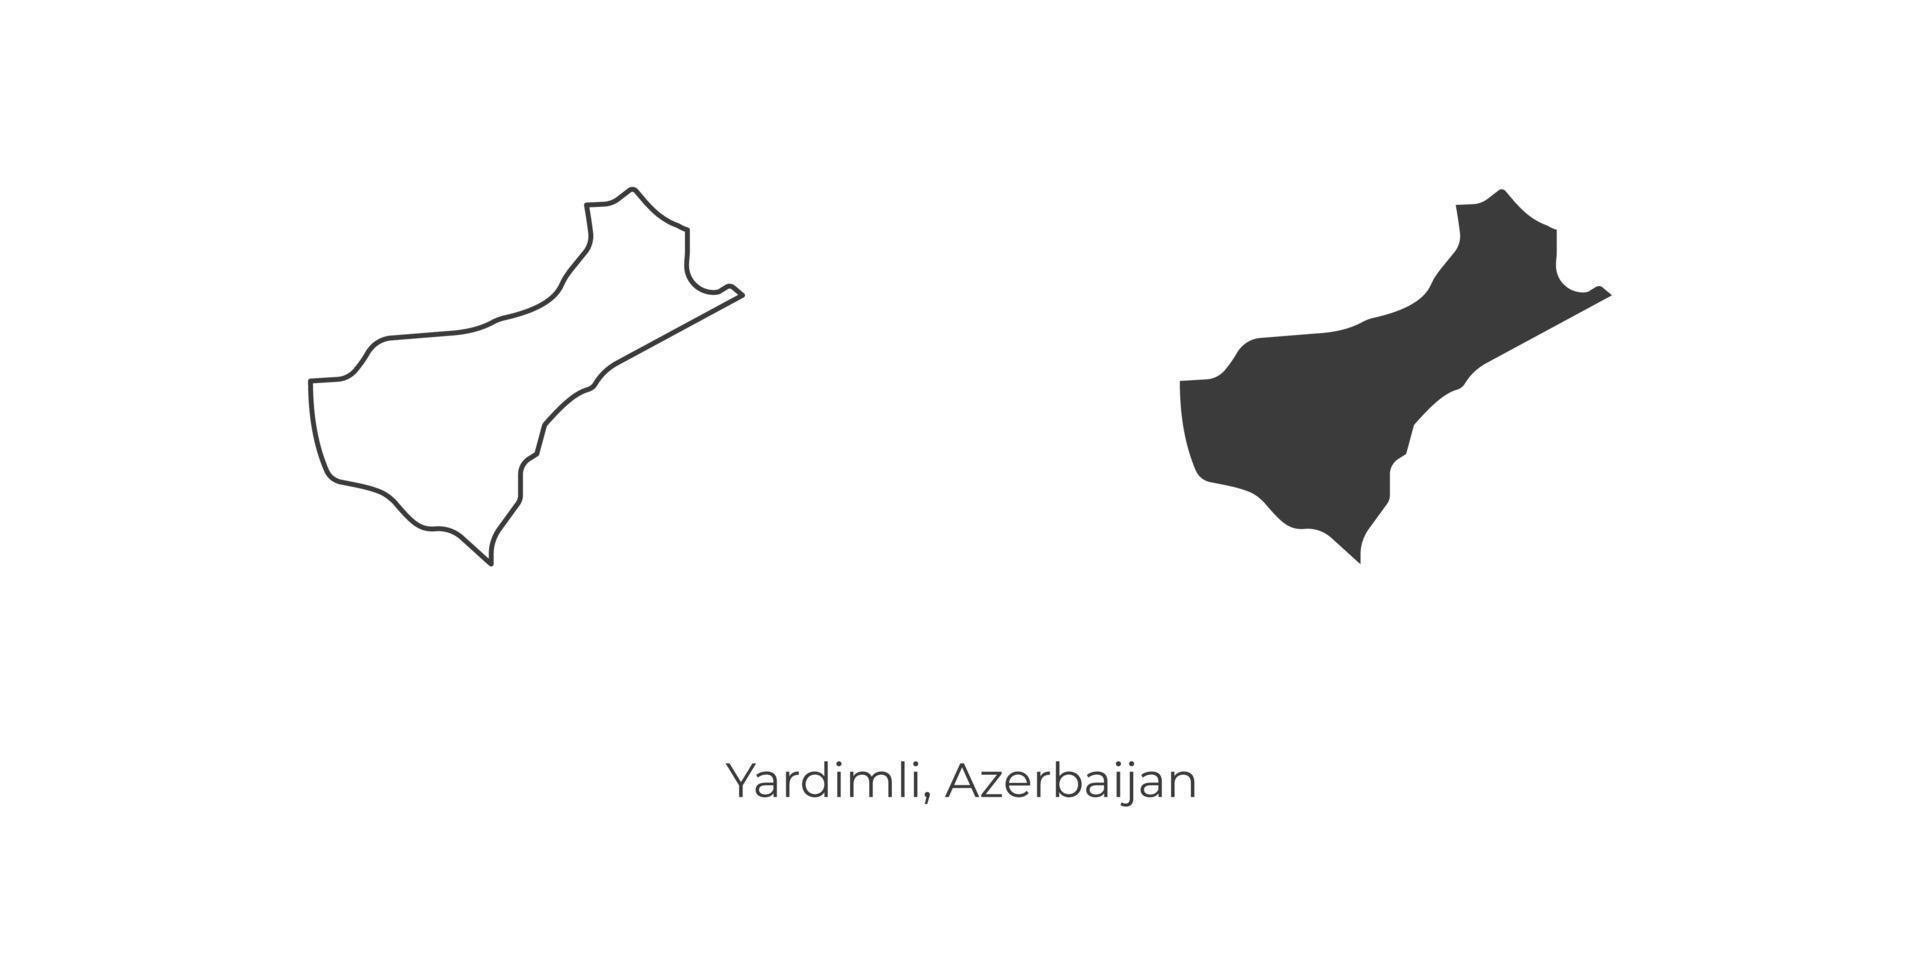 ilustración vectorial simple del mapa yardimli, azerbaiyán. vector